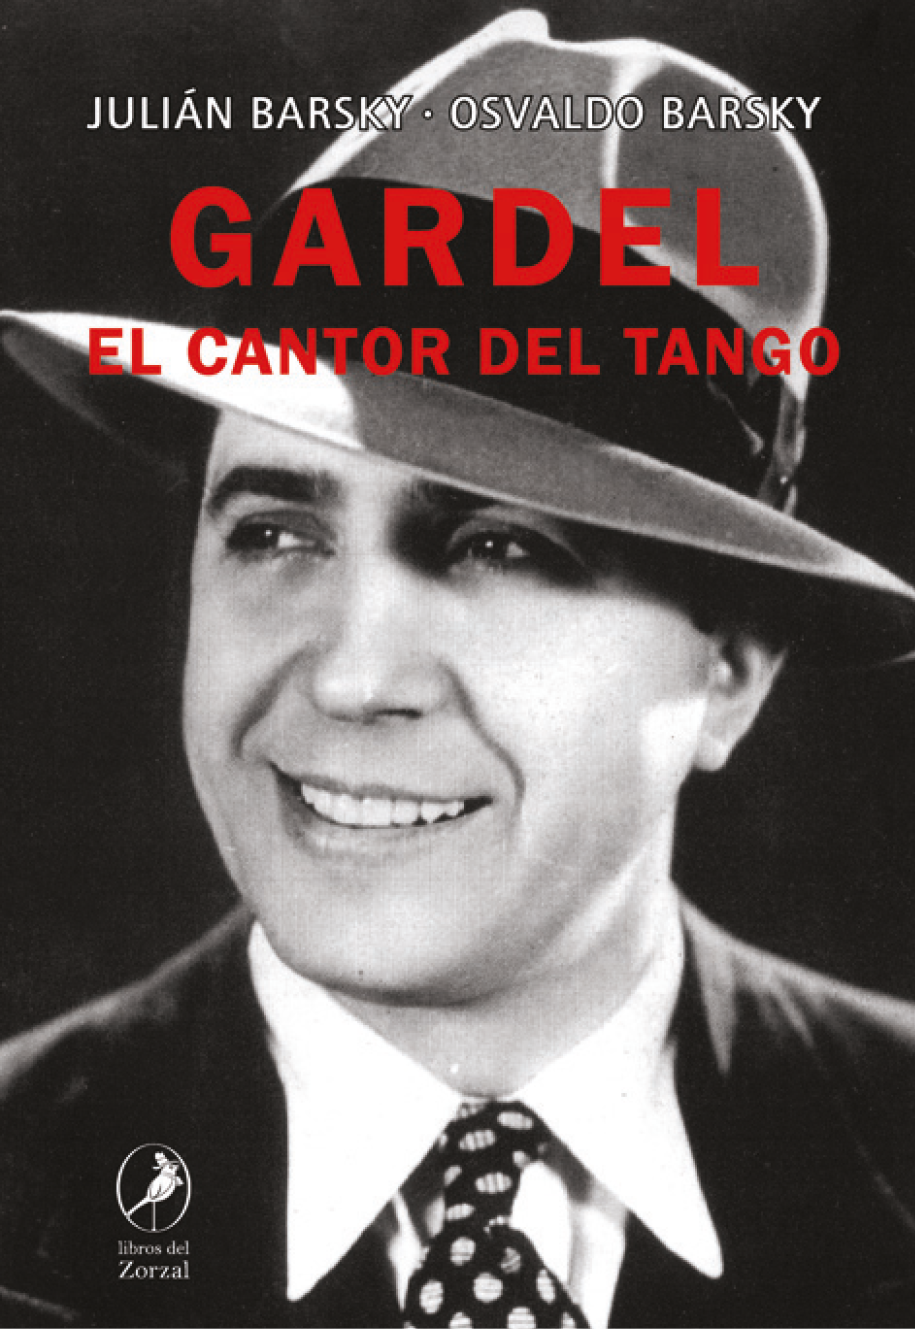 Julián Barsky - Osvaldo Barsky Gardel EL CANTOR DEL TANGO Barsky - photo 1